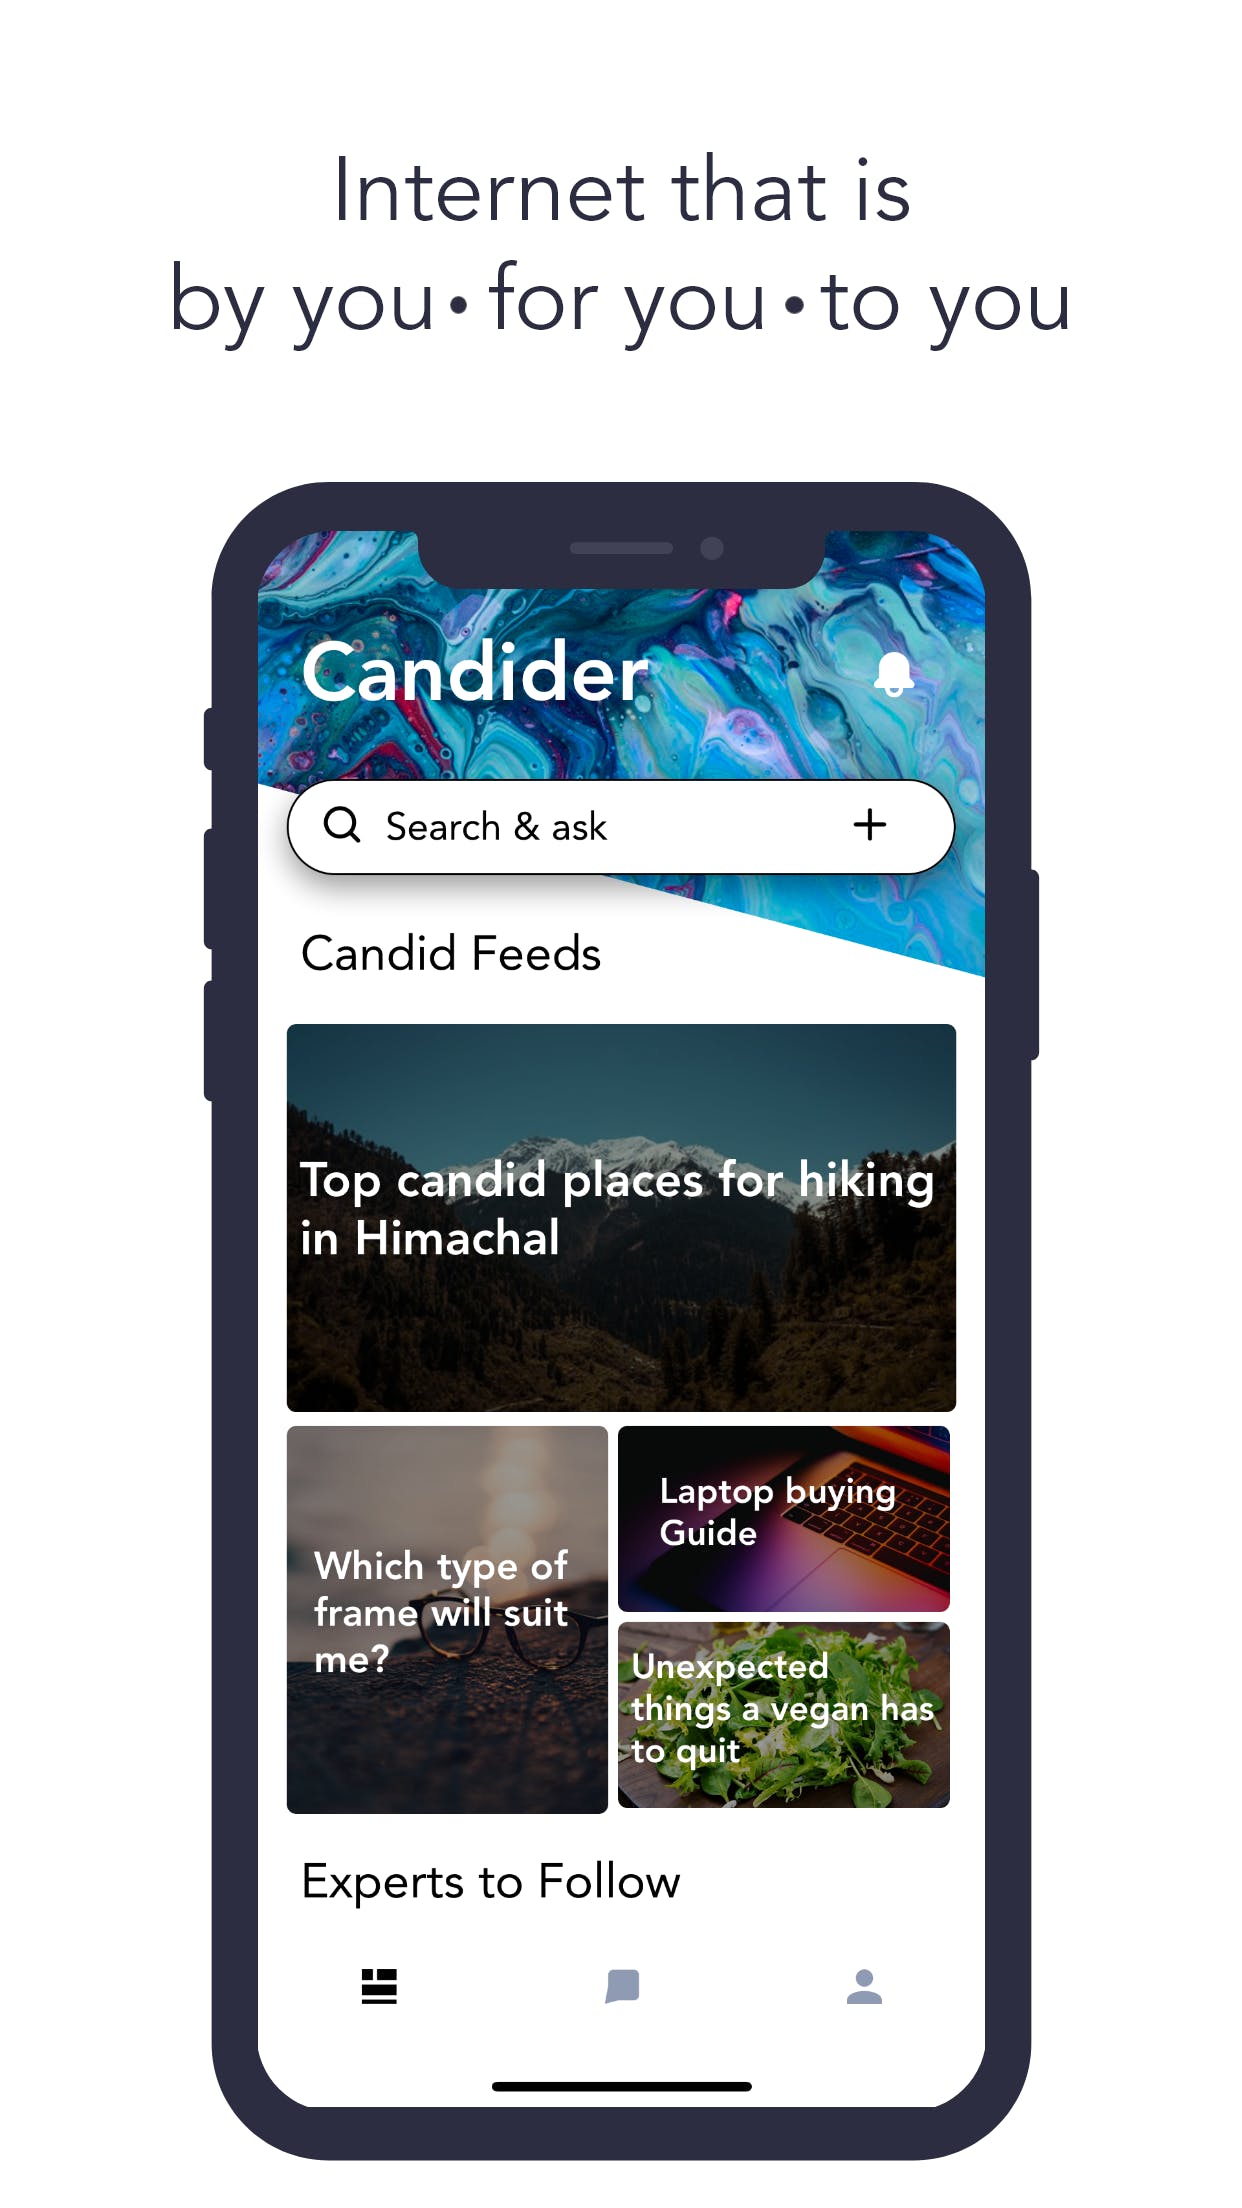 Candider media 2